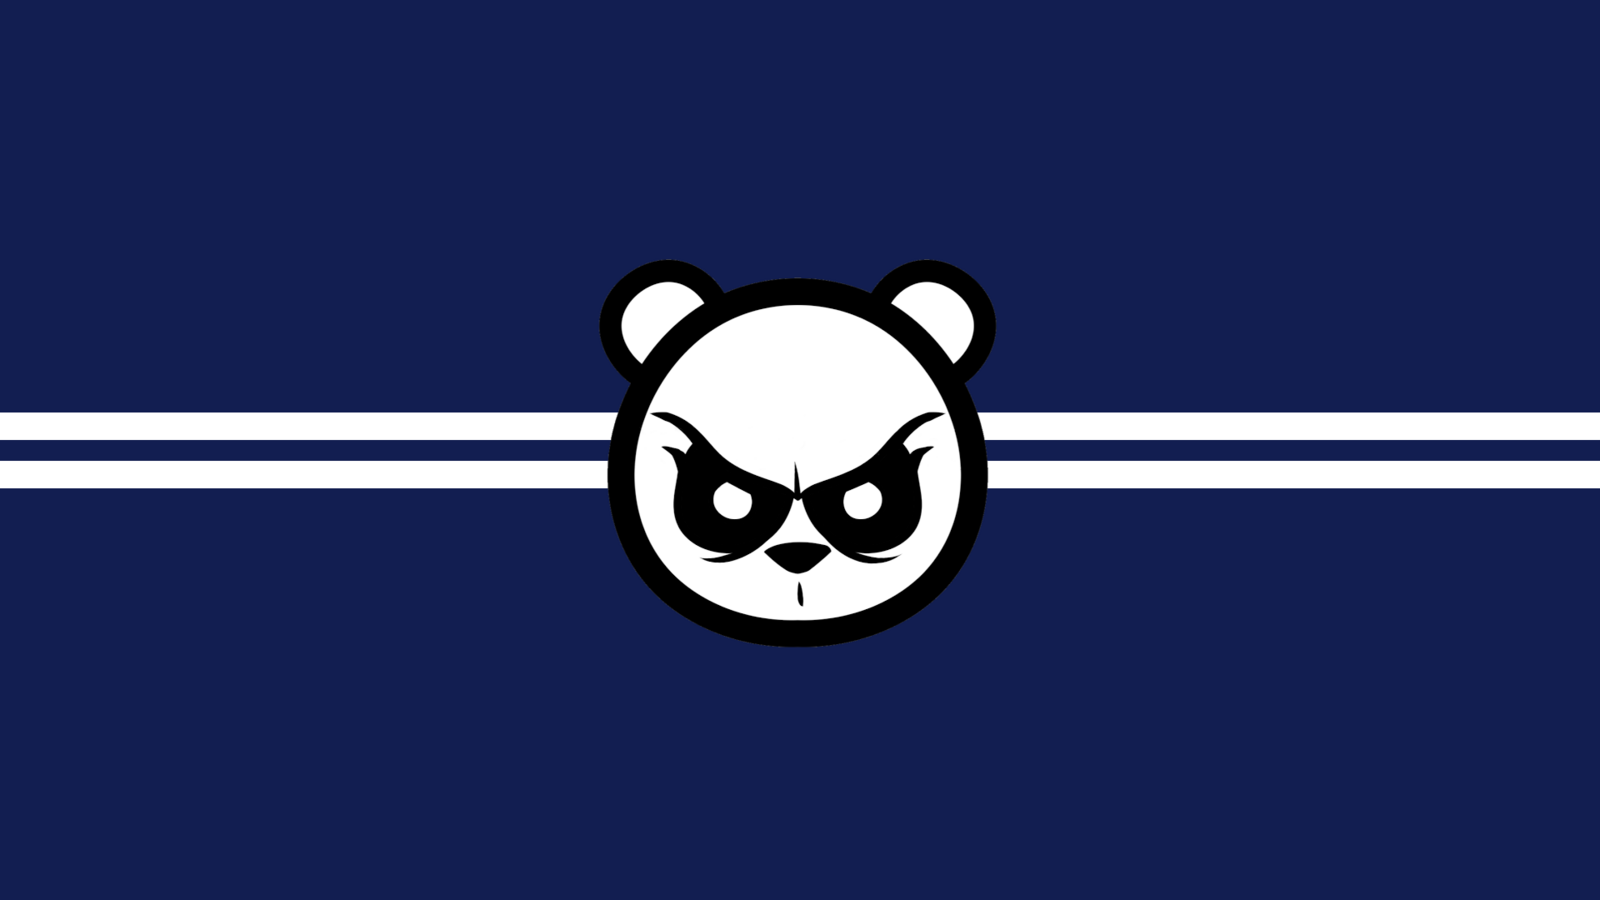 Wallpapers minimalism logo panda on the desktop